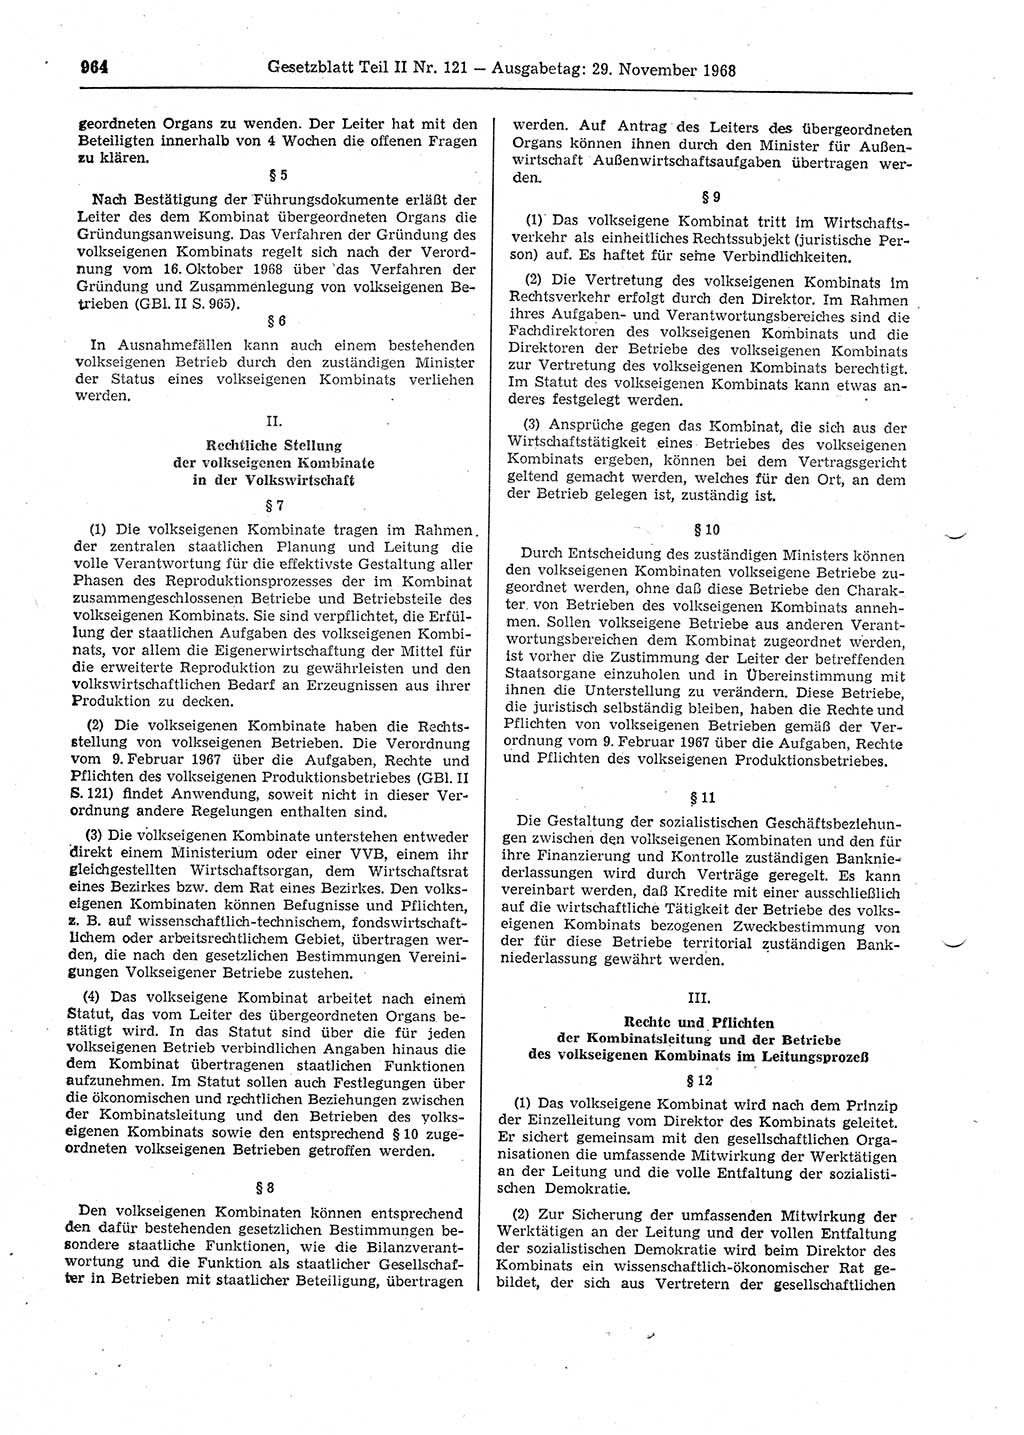 Gesetzblatt (GBl.) der Deutschen Demokratischen Republik (DDR) Teil ⅠⅠ 1968, Seite 964 (GBl. DDR ⅠⅠ 1968, S. 964)